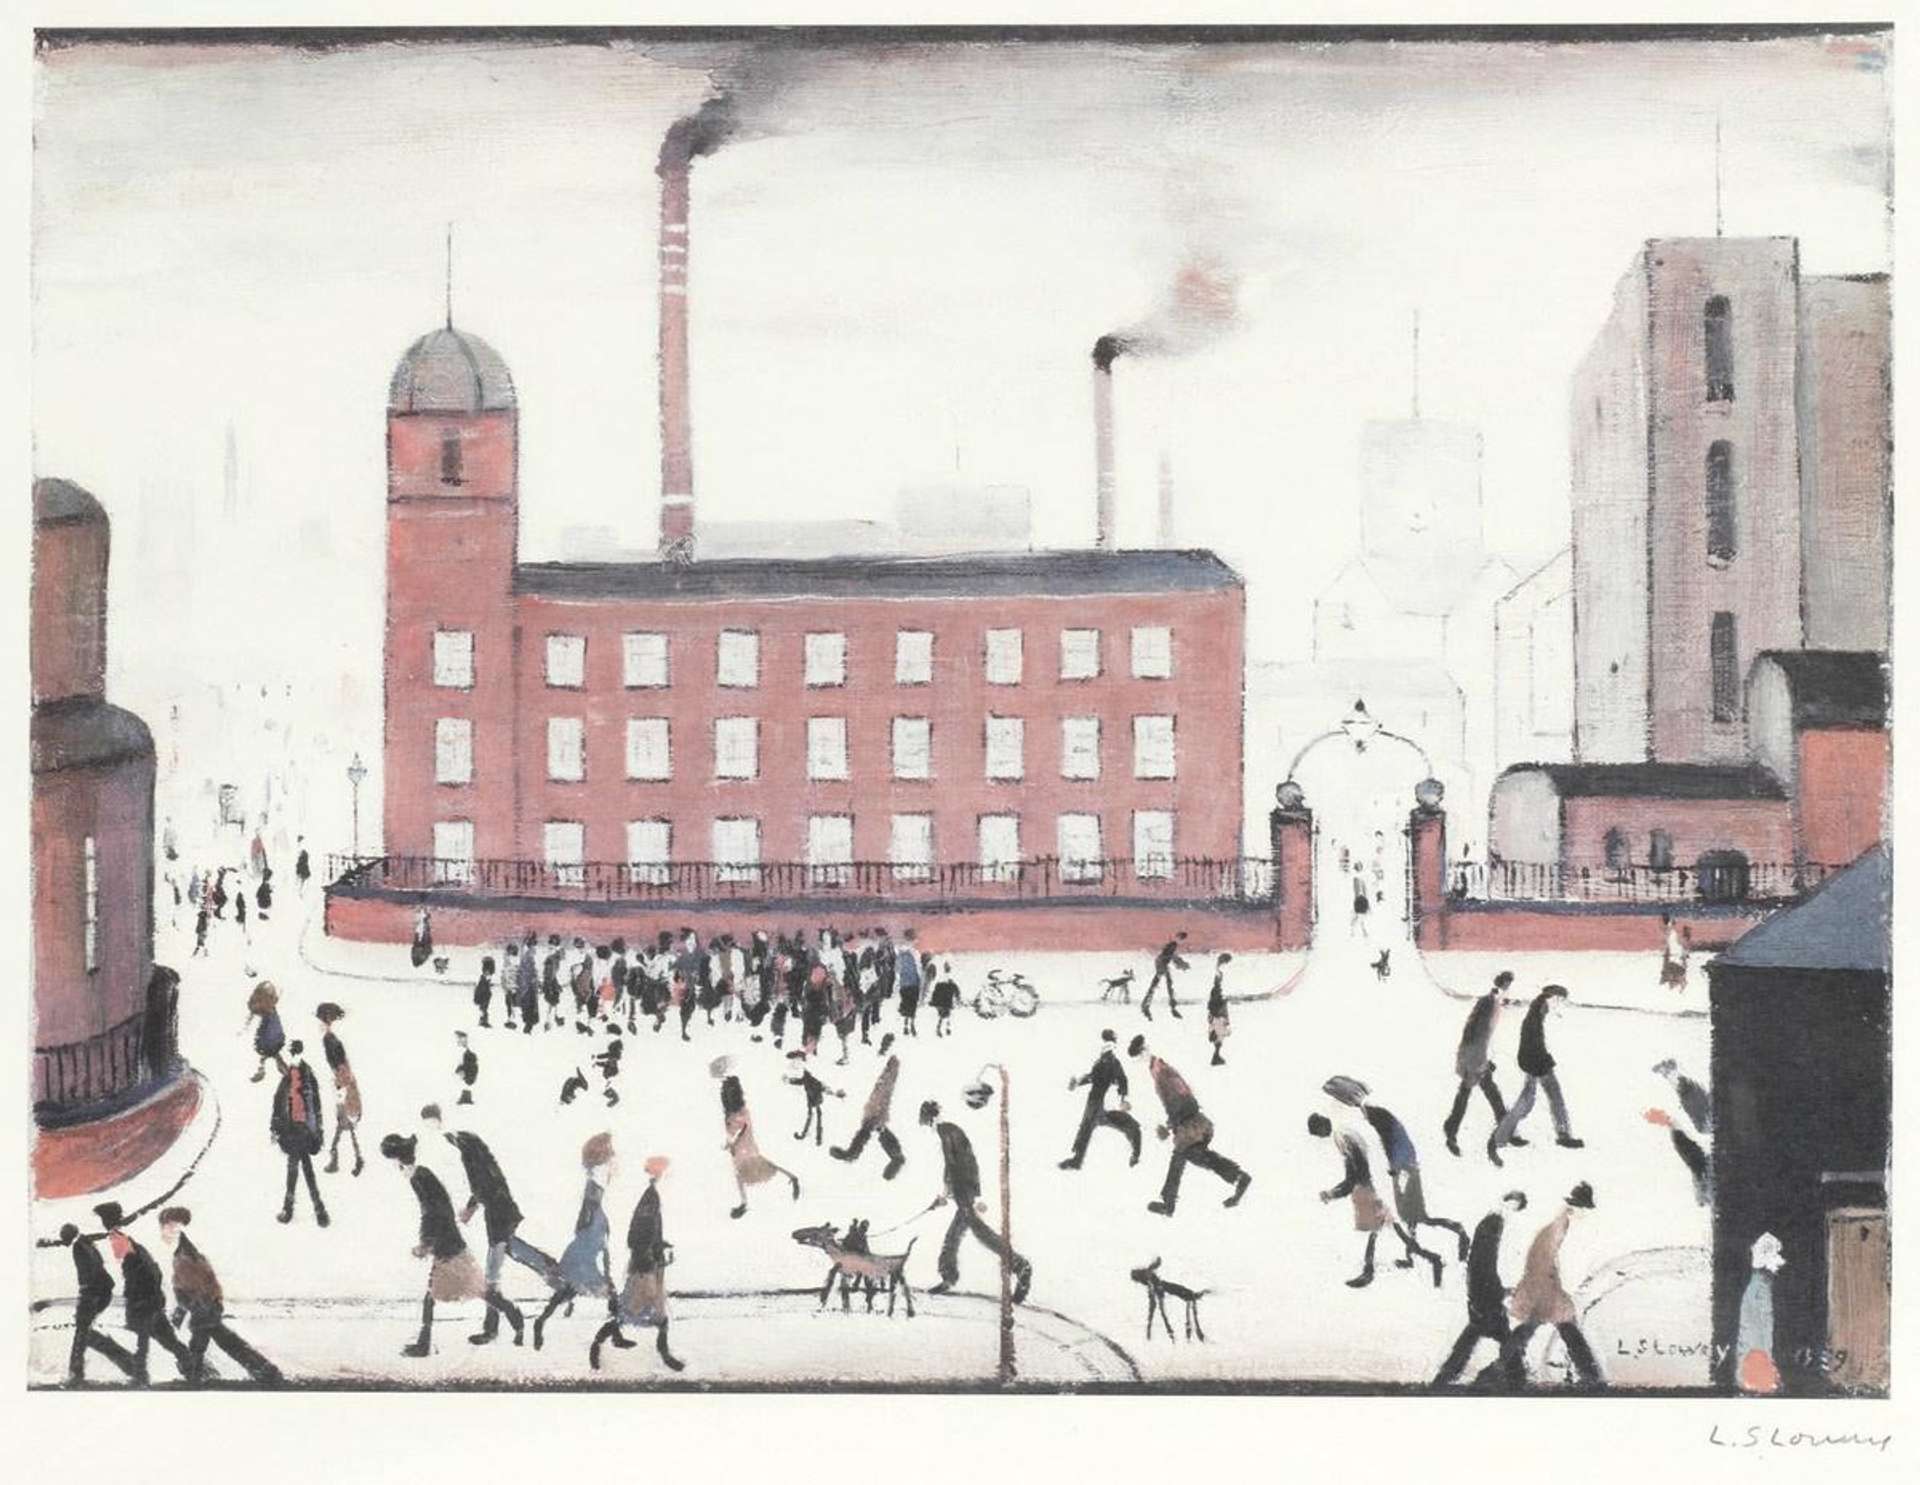 Mill Scene by L. S. Lowry